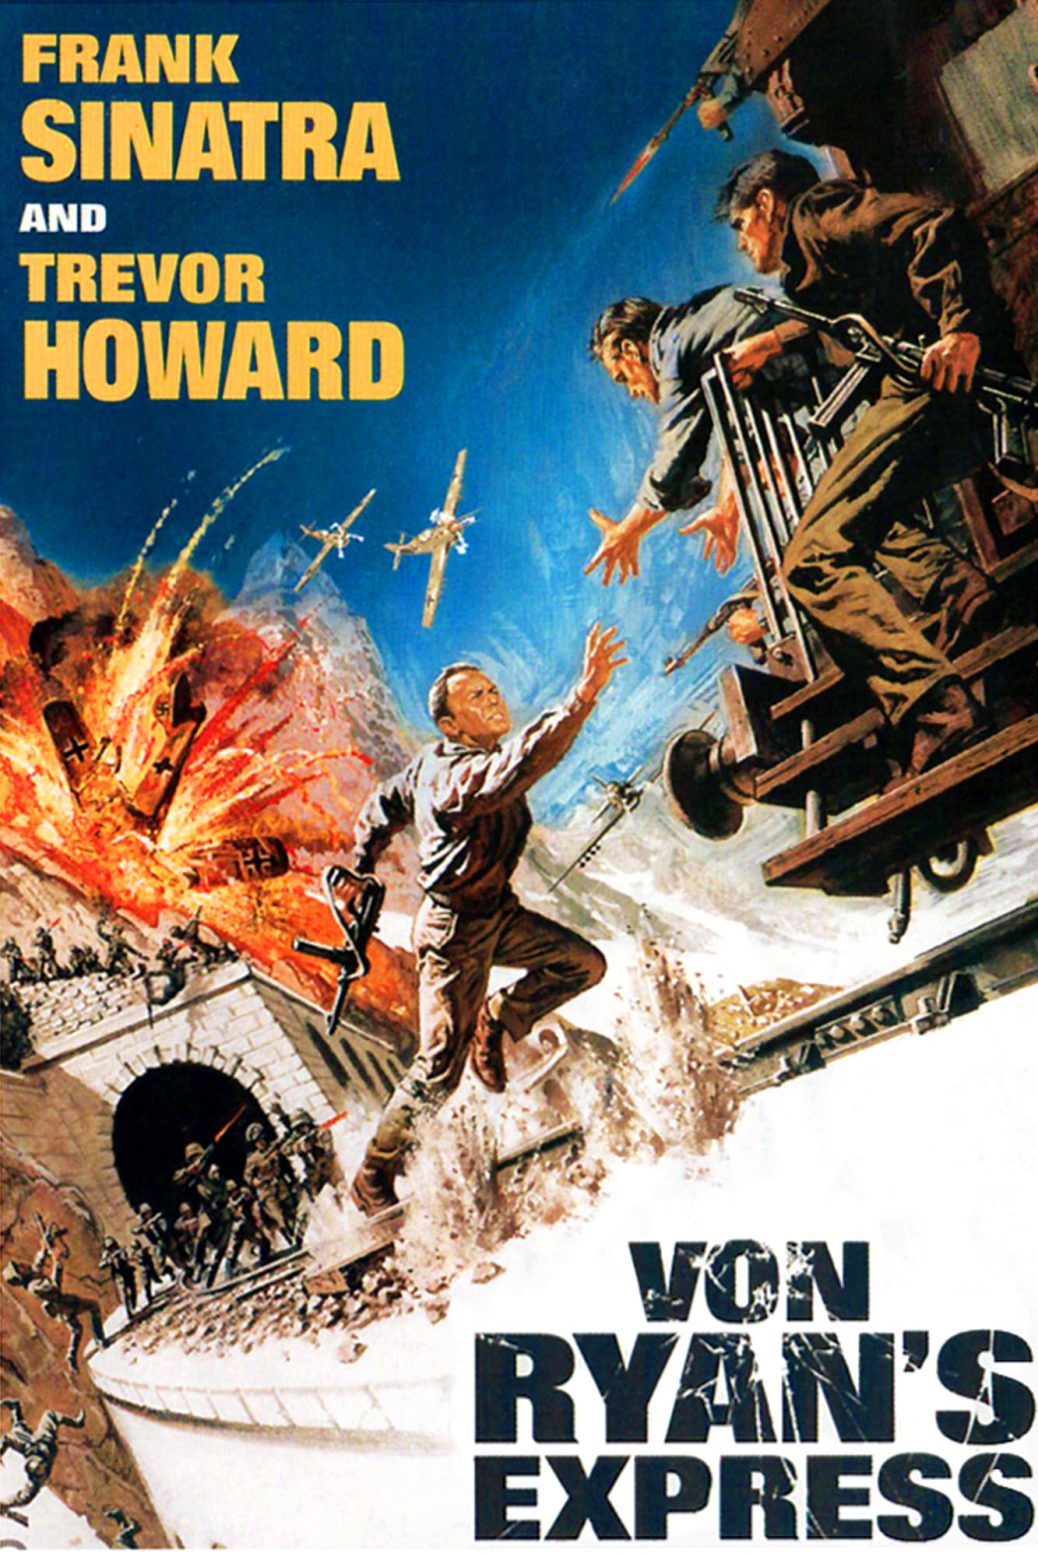 Poster for the movie "Von Ryan's Express"